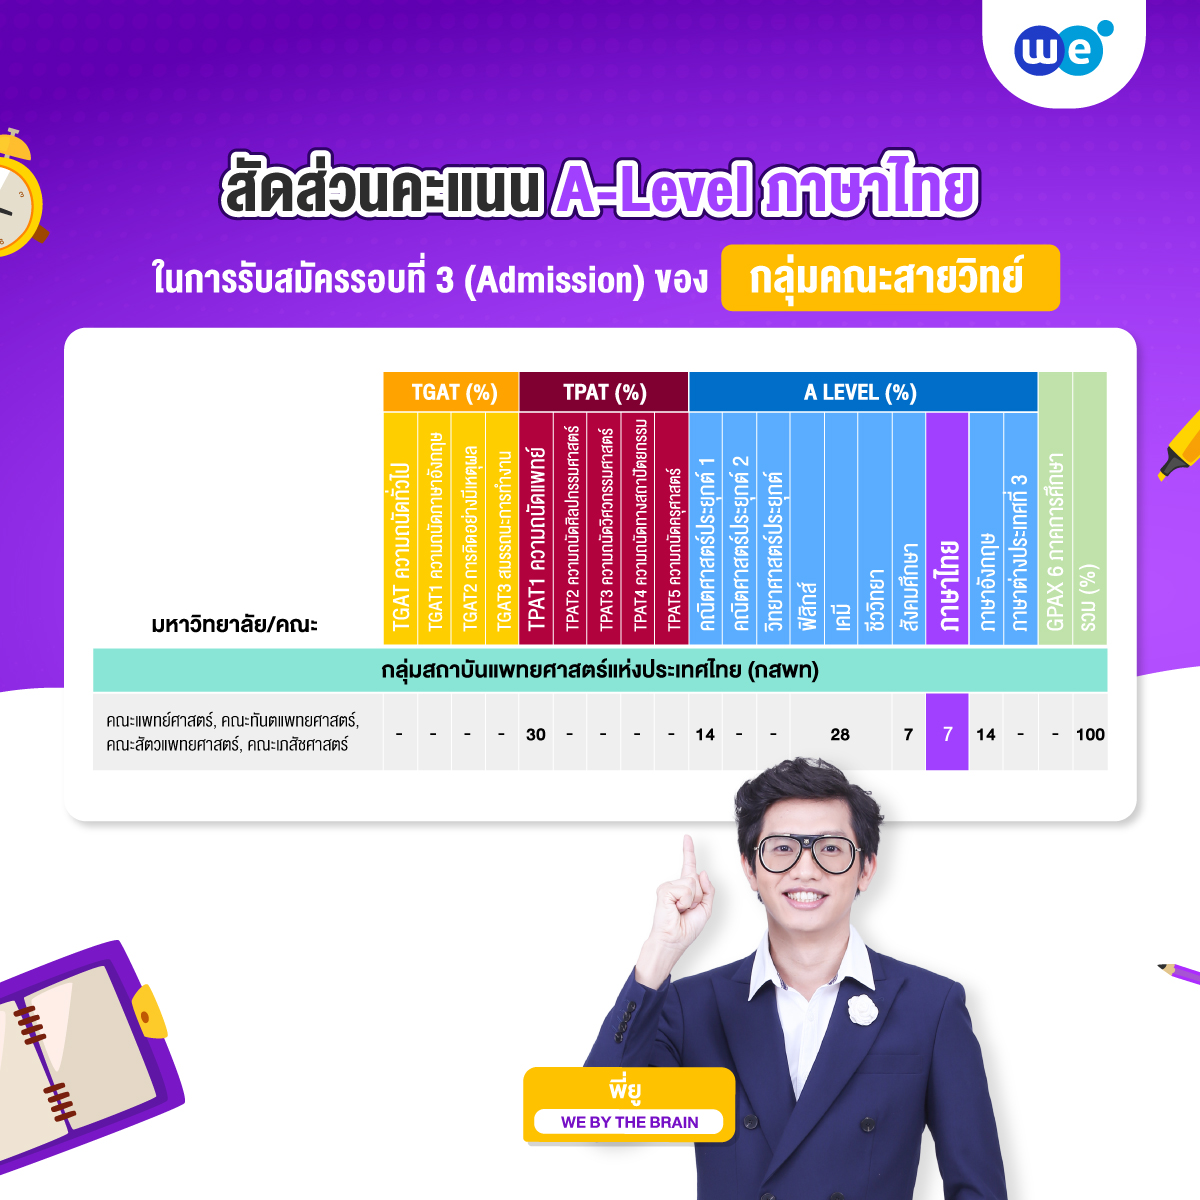 สัดส่วนคะแนน A-Level ภาษาไทย ที่ใช้ยื่นรอบที่ 3 (Admission) กลุ่มคณะสายวิทย์